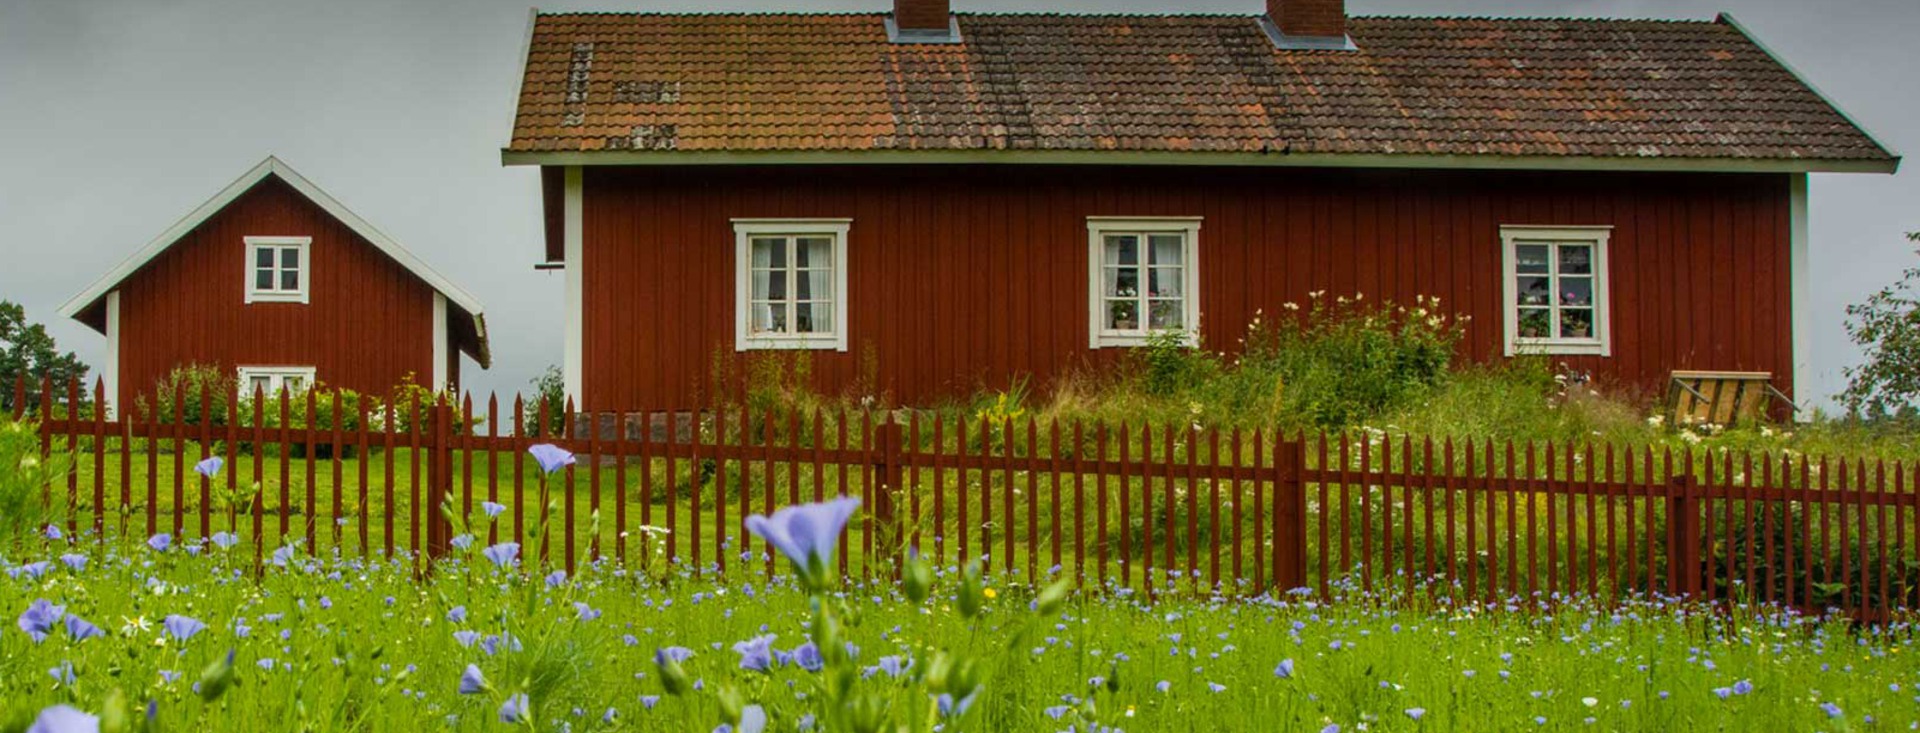 Två röda bostadshus med vita knutar, omgivna av äng med blommande blå lin.